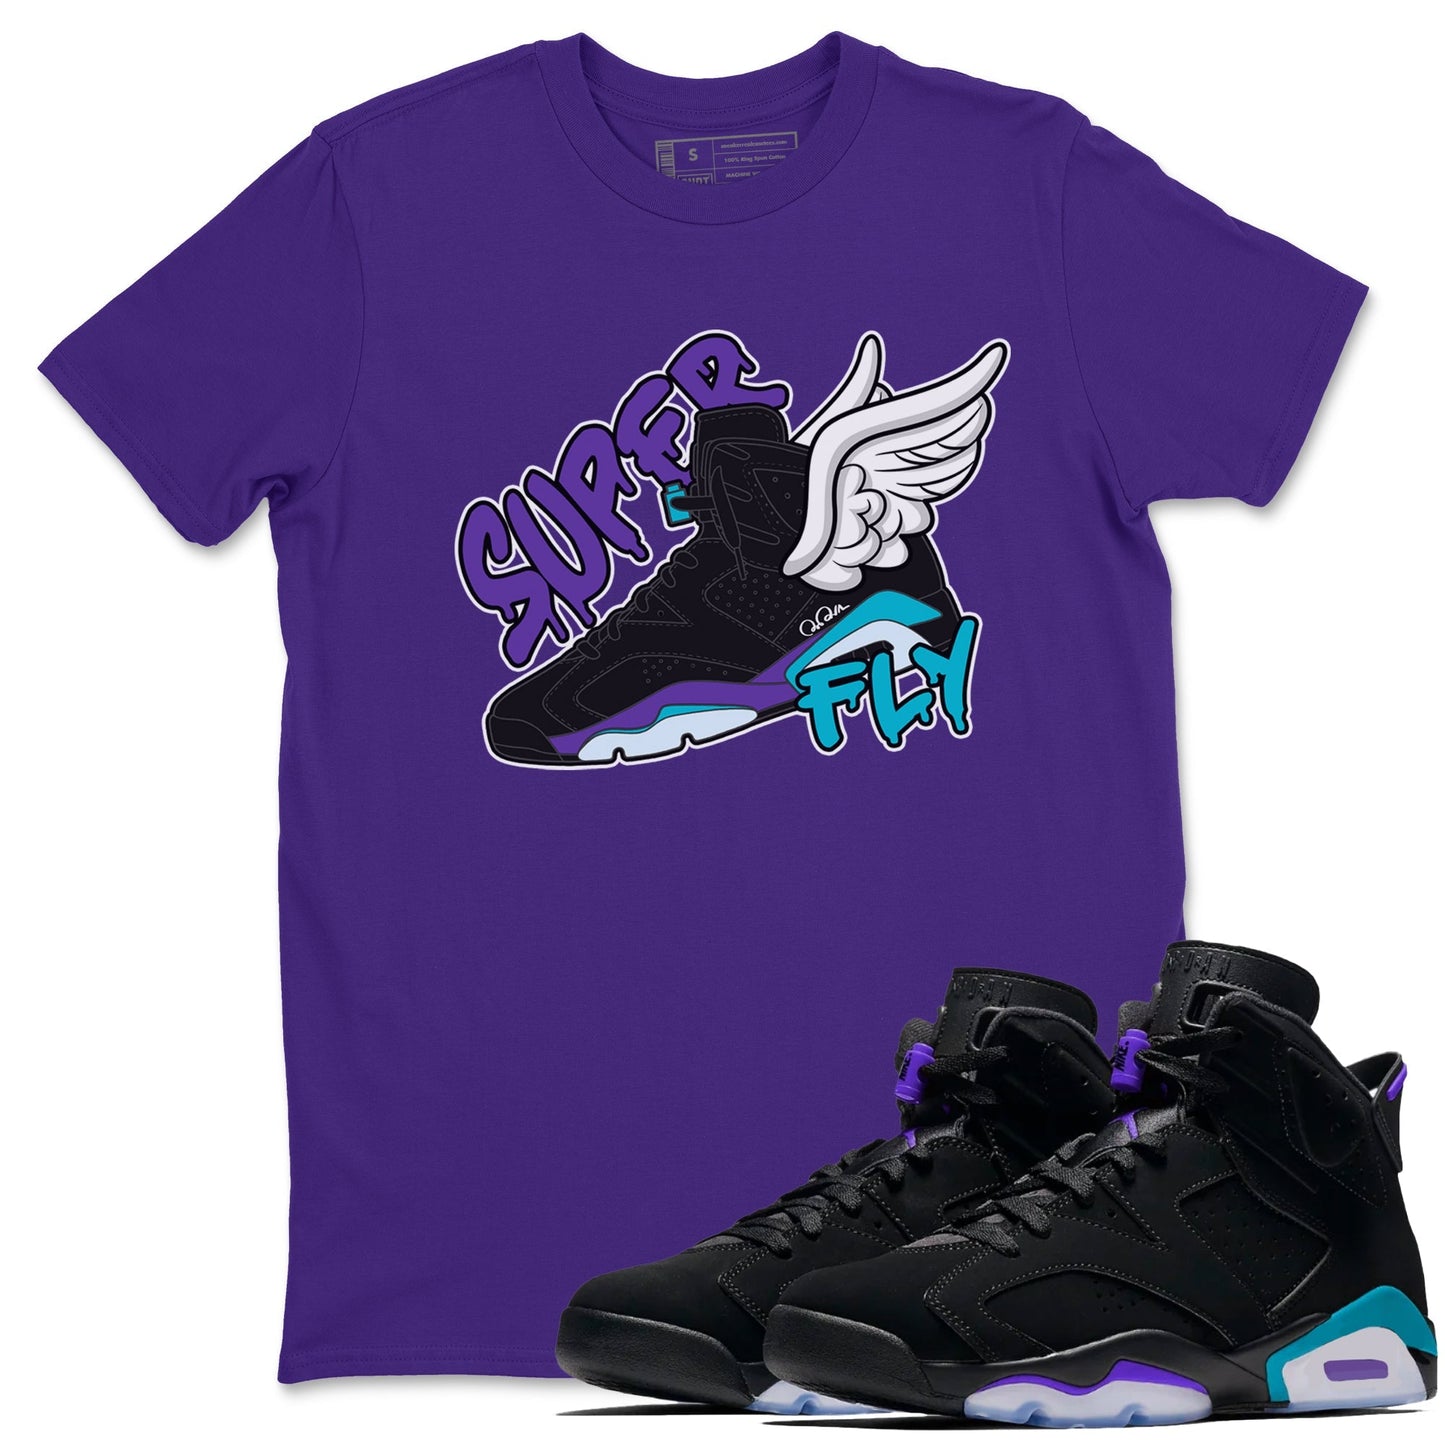 Air Jordan 6 Aqua Sneaker Match Tees Super Fly Sneaker Tees AJ6 Aqua Sneaker Release Tees Unisex Shirts Purple 1